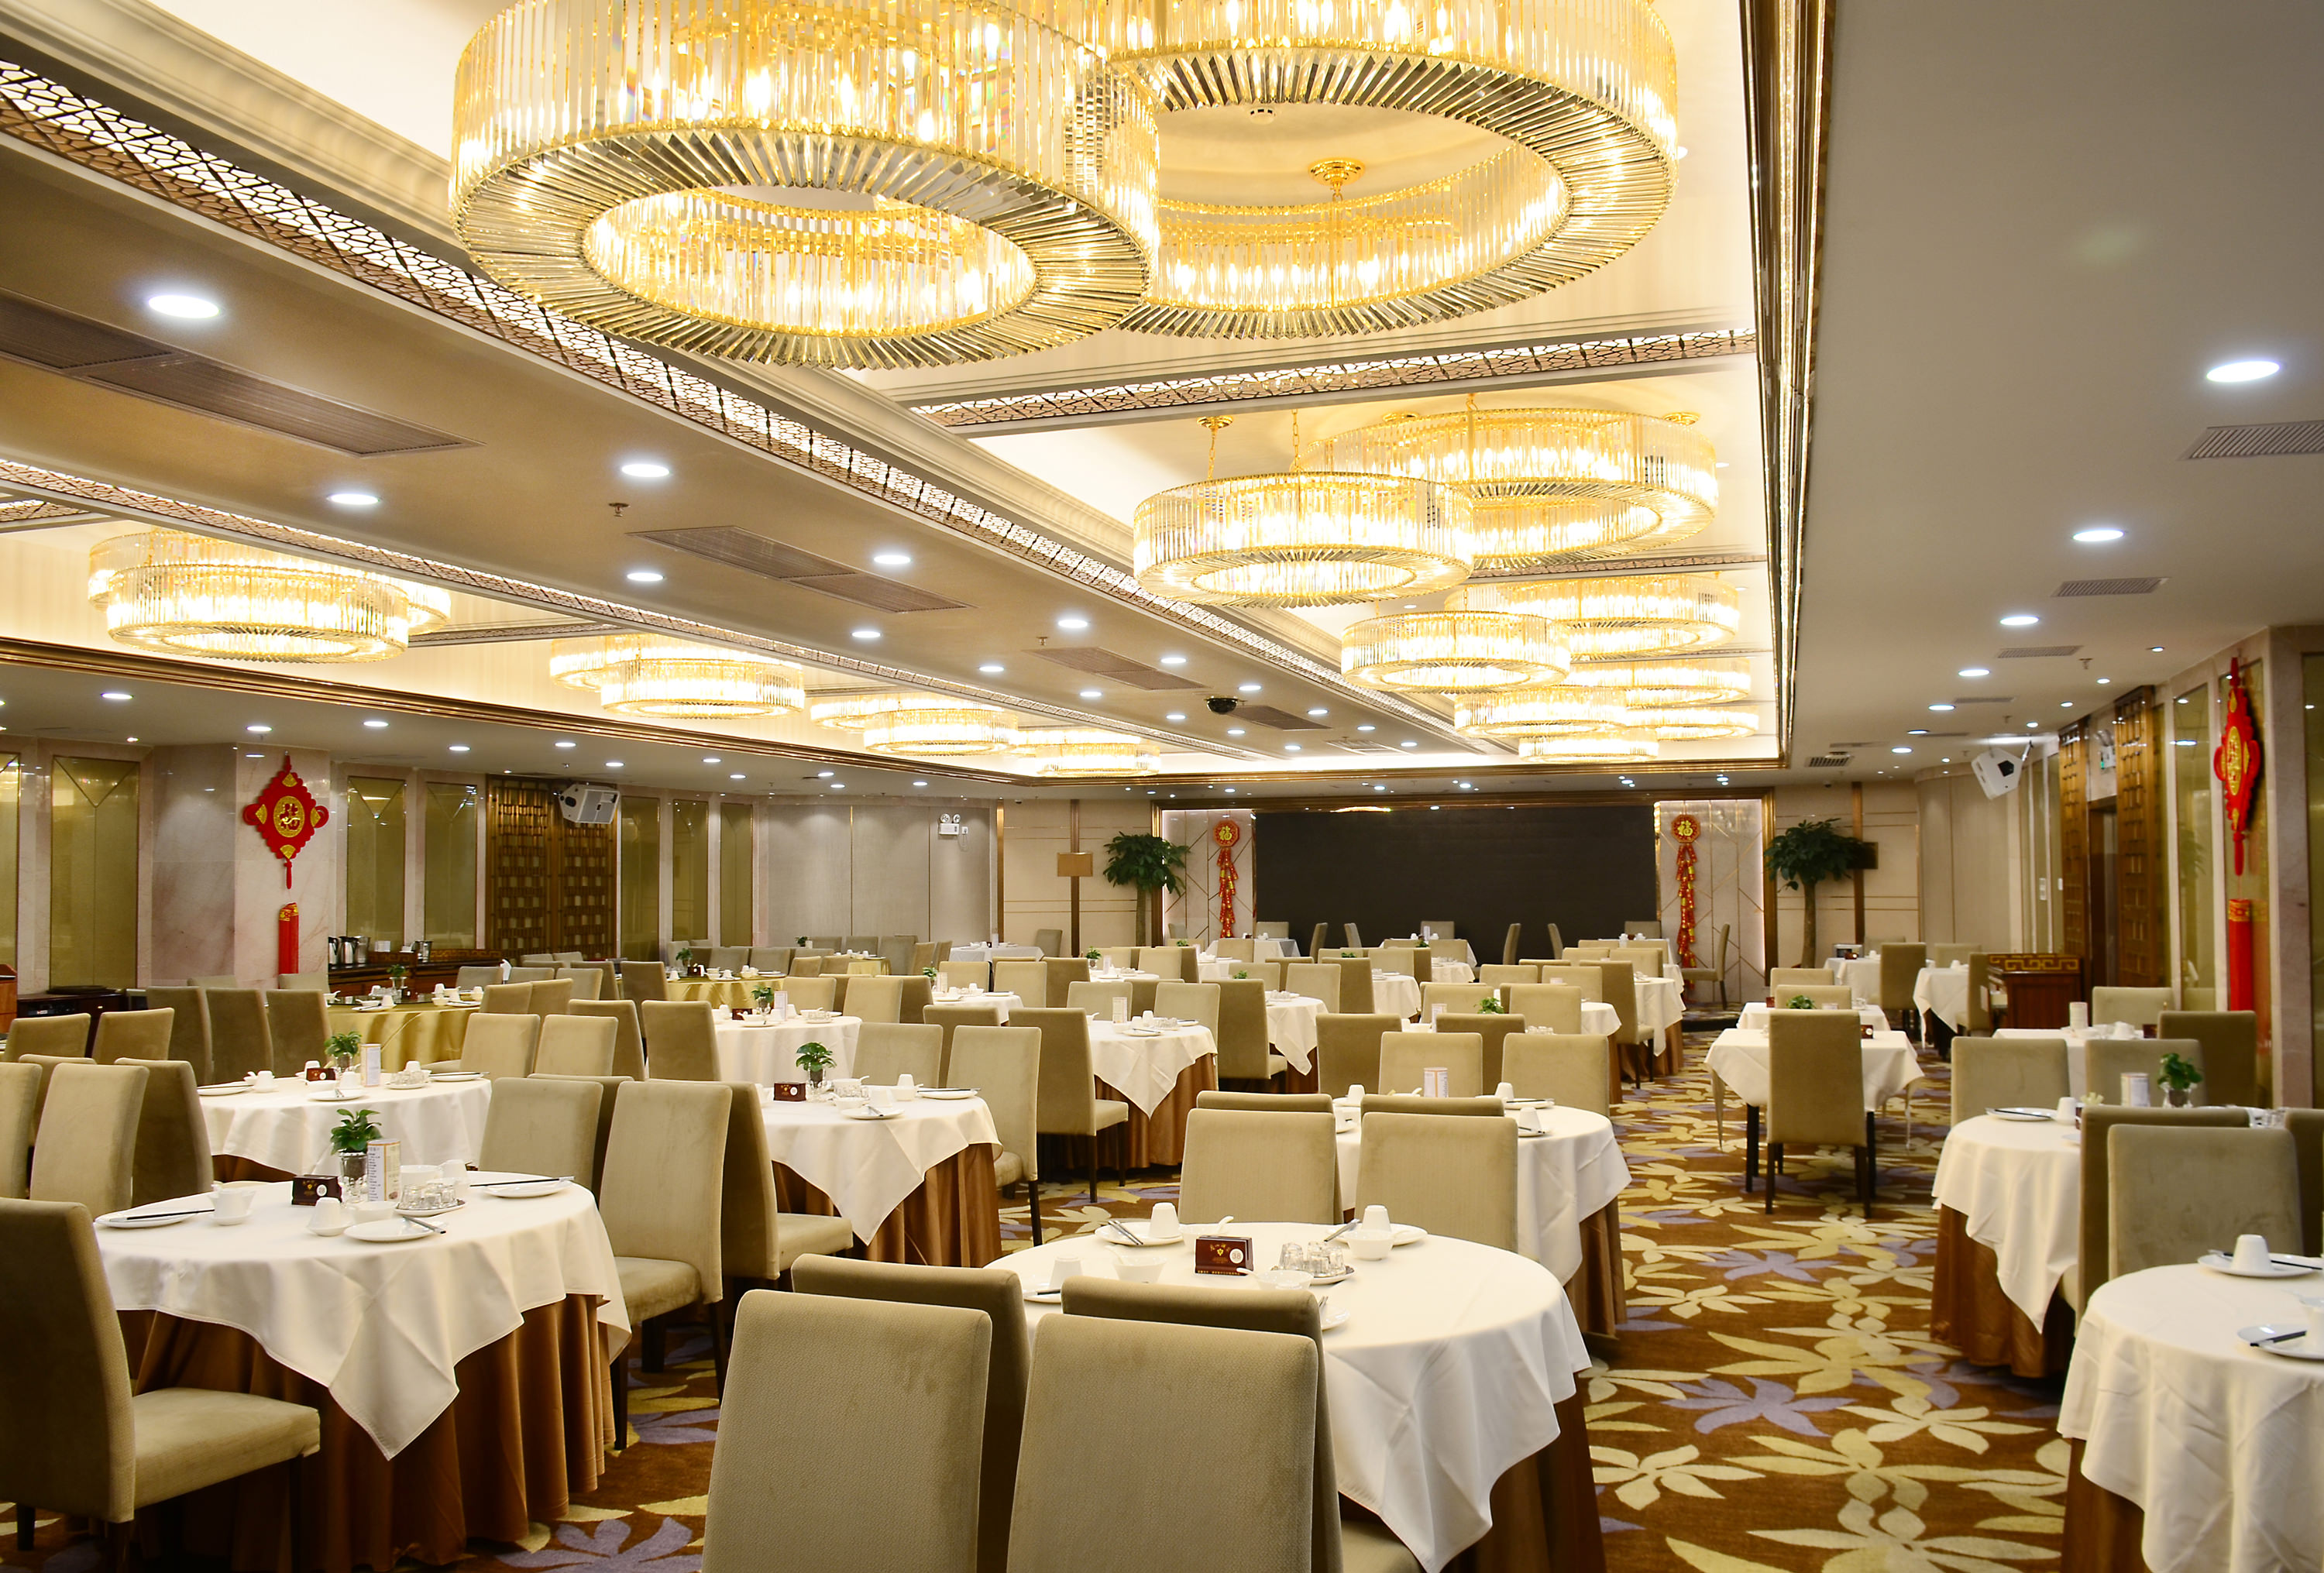 和丰鼎悦酒家-餐饮-广州市千浩室内装饰设计有限公司